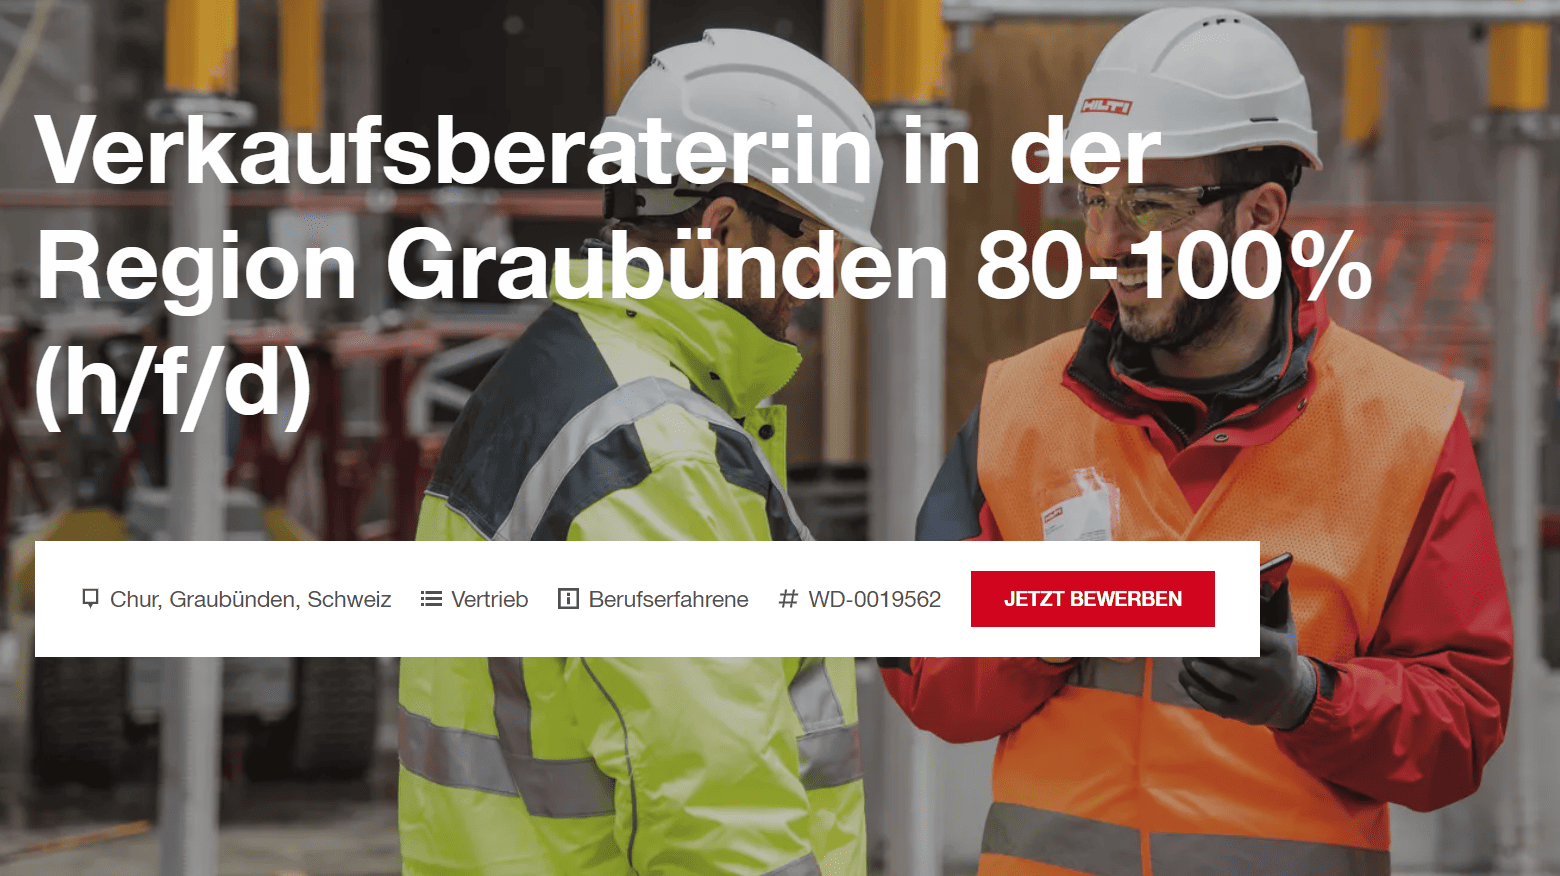 Stellenanzeige "Verkaufsberater:in in der Region Graubünden 80-100% (h/f/d)